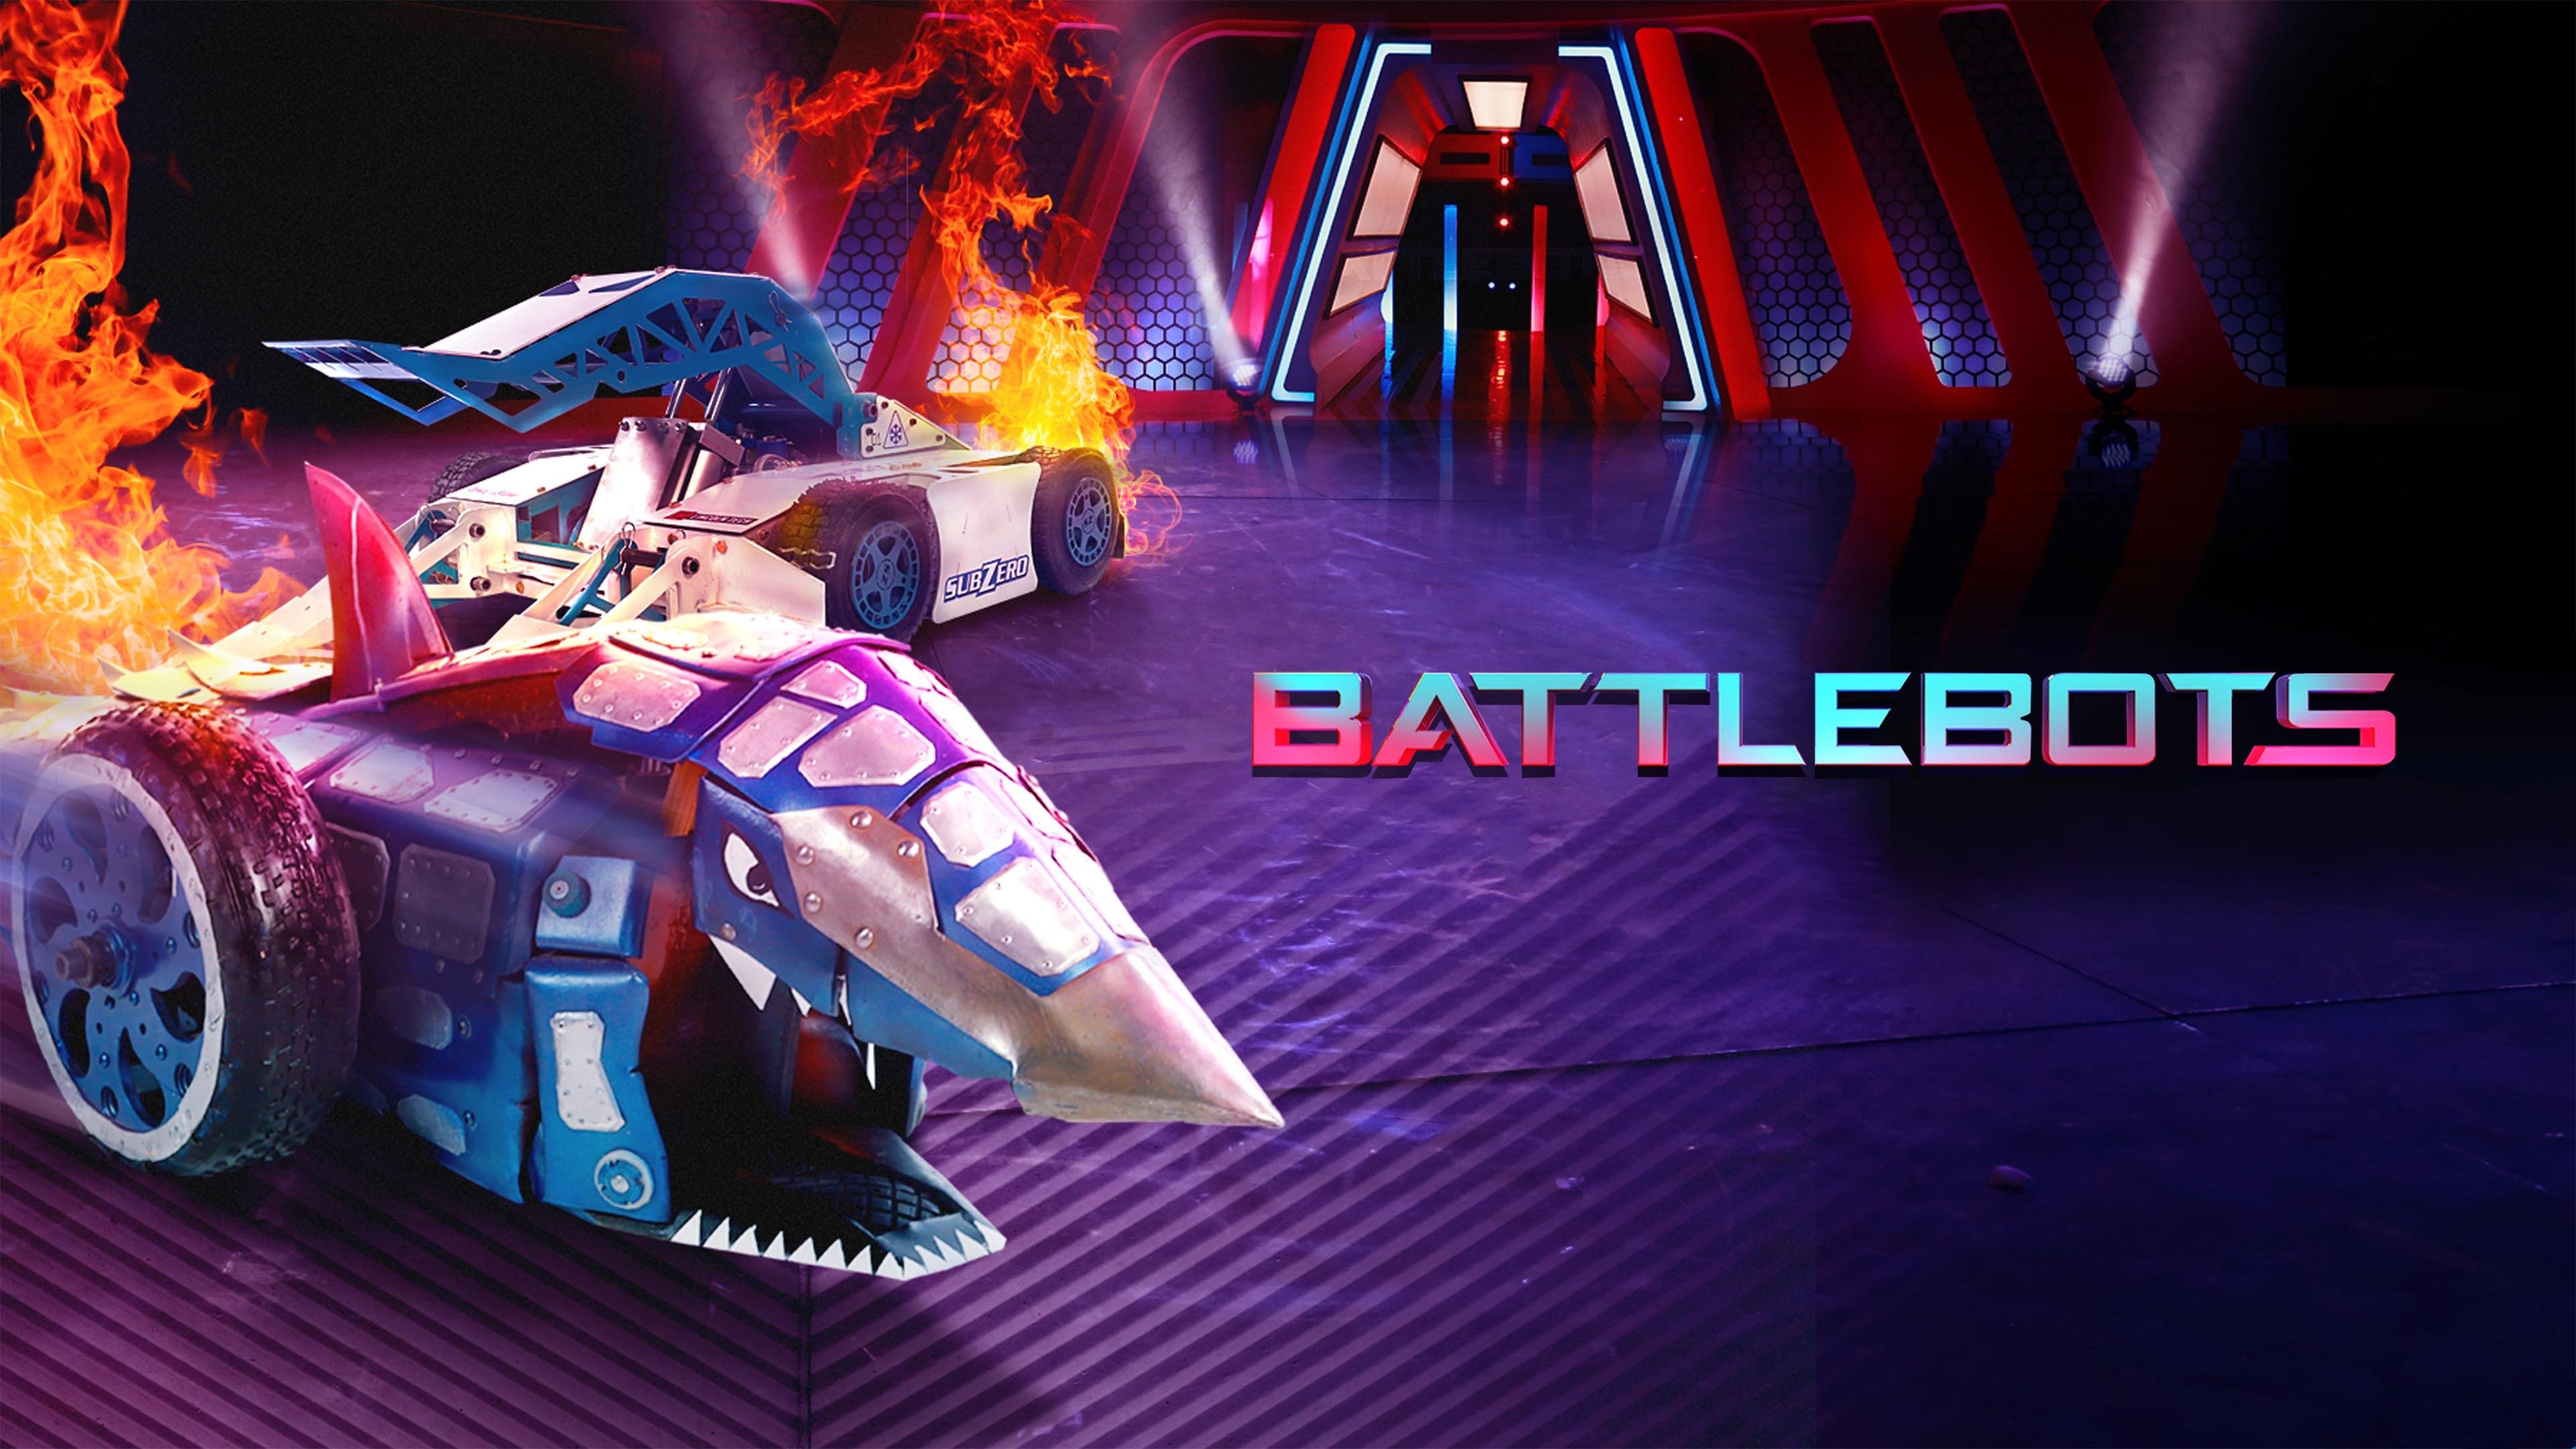 download bite force battlebots for sale